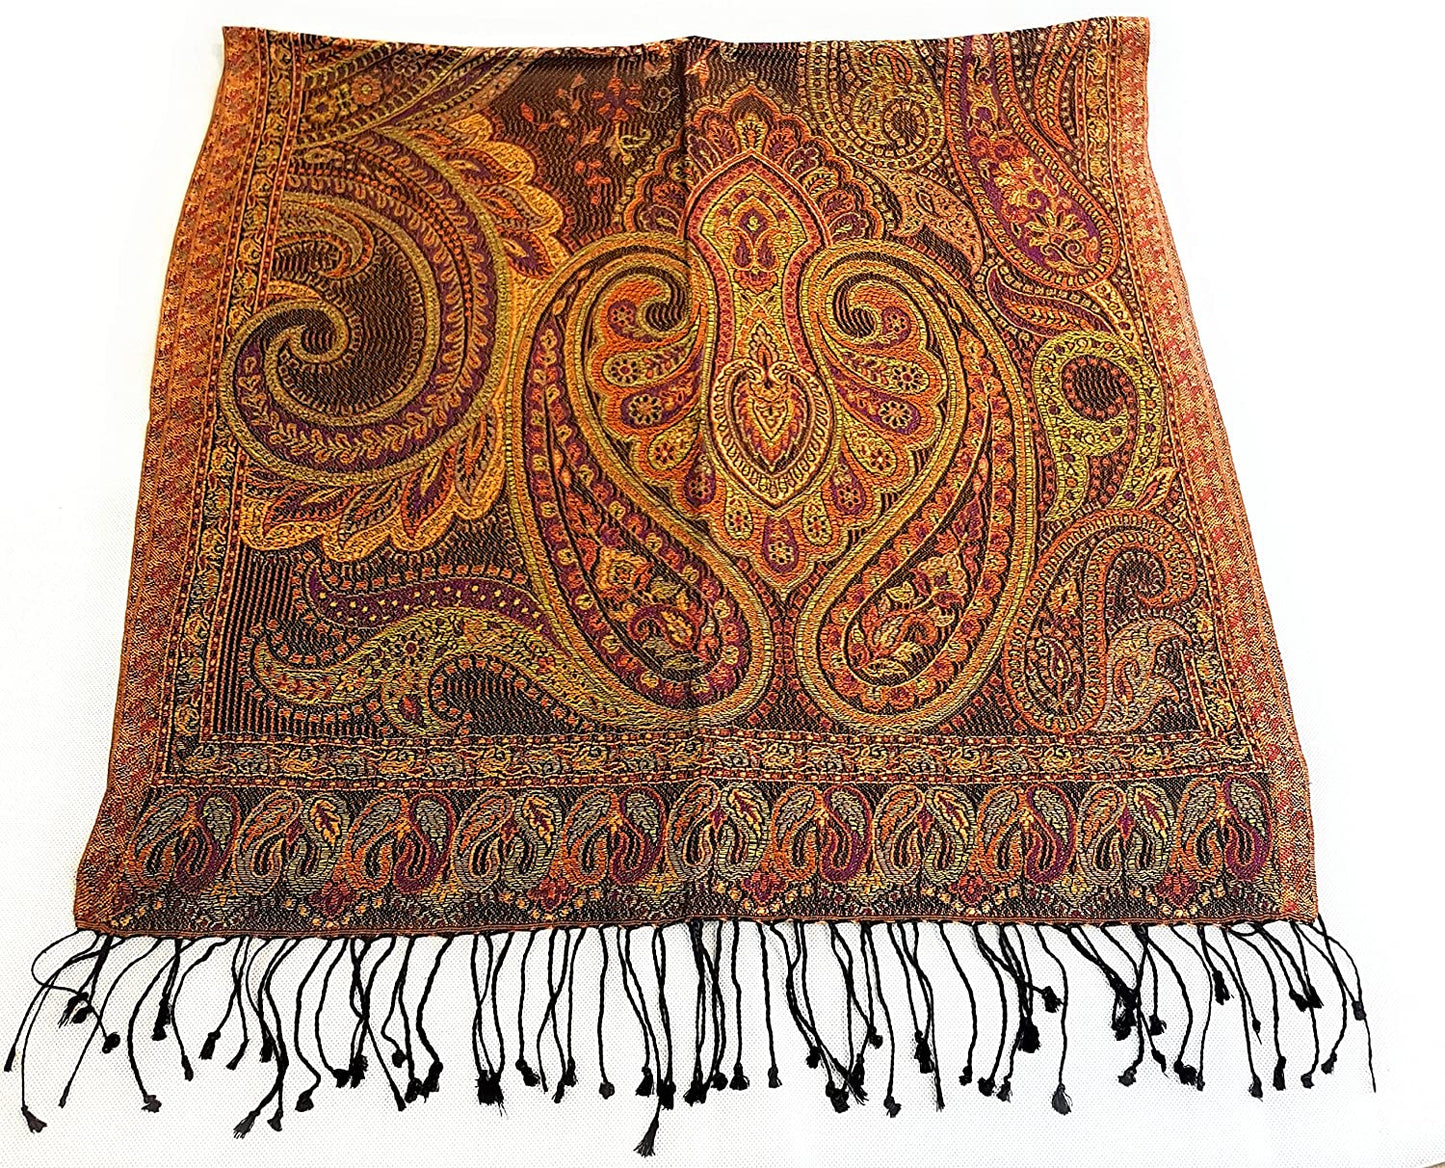 Luxus Seidenschal aus Indien für Damen & Herren, elegante Farben mit Fransen Paisley Muster 200 x 55 cm - Schal aus reiner Seide - diverse Designs